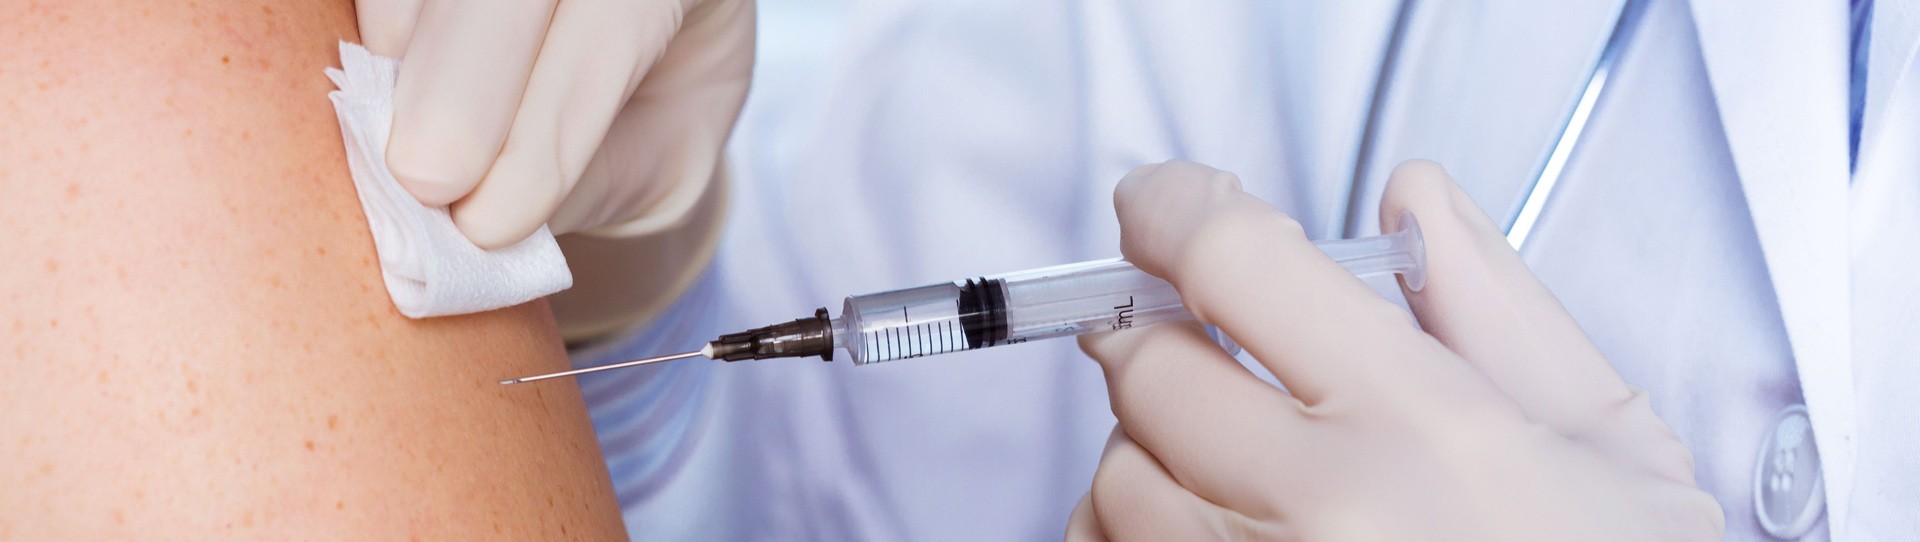 Impfung Bremen Kosten – ein Arzt nimmt eine Impfung vor